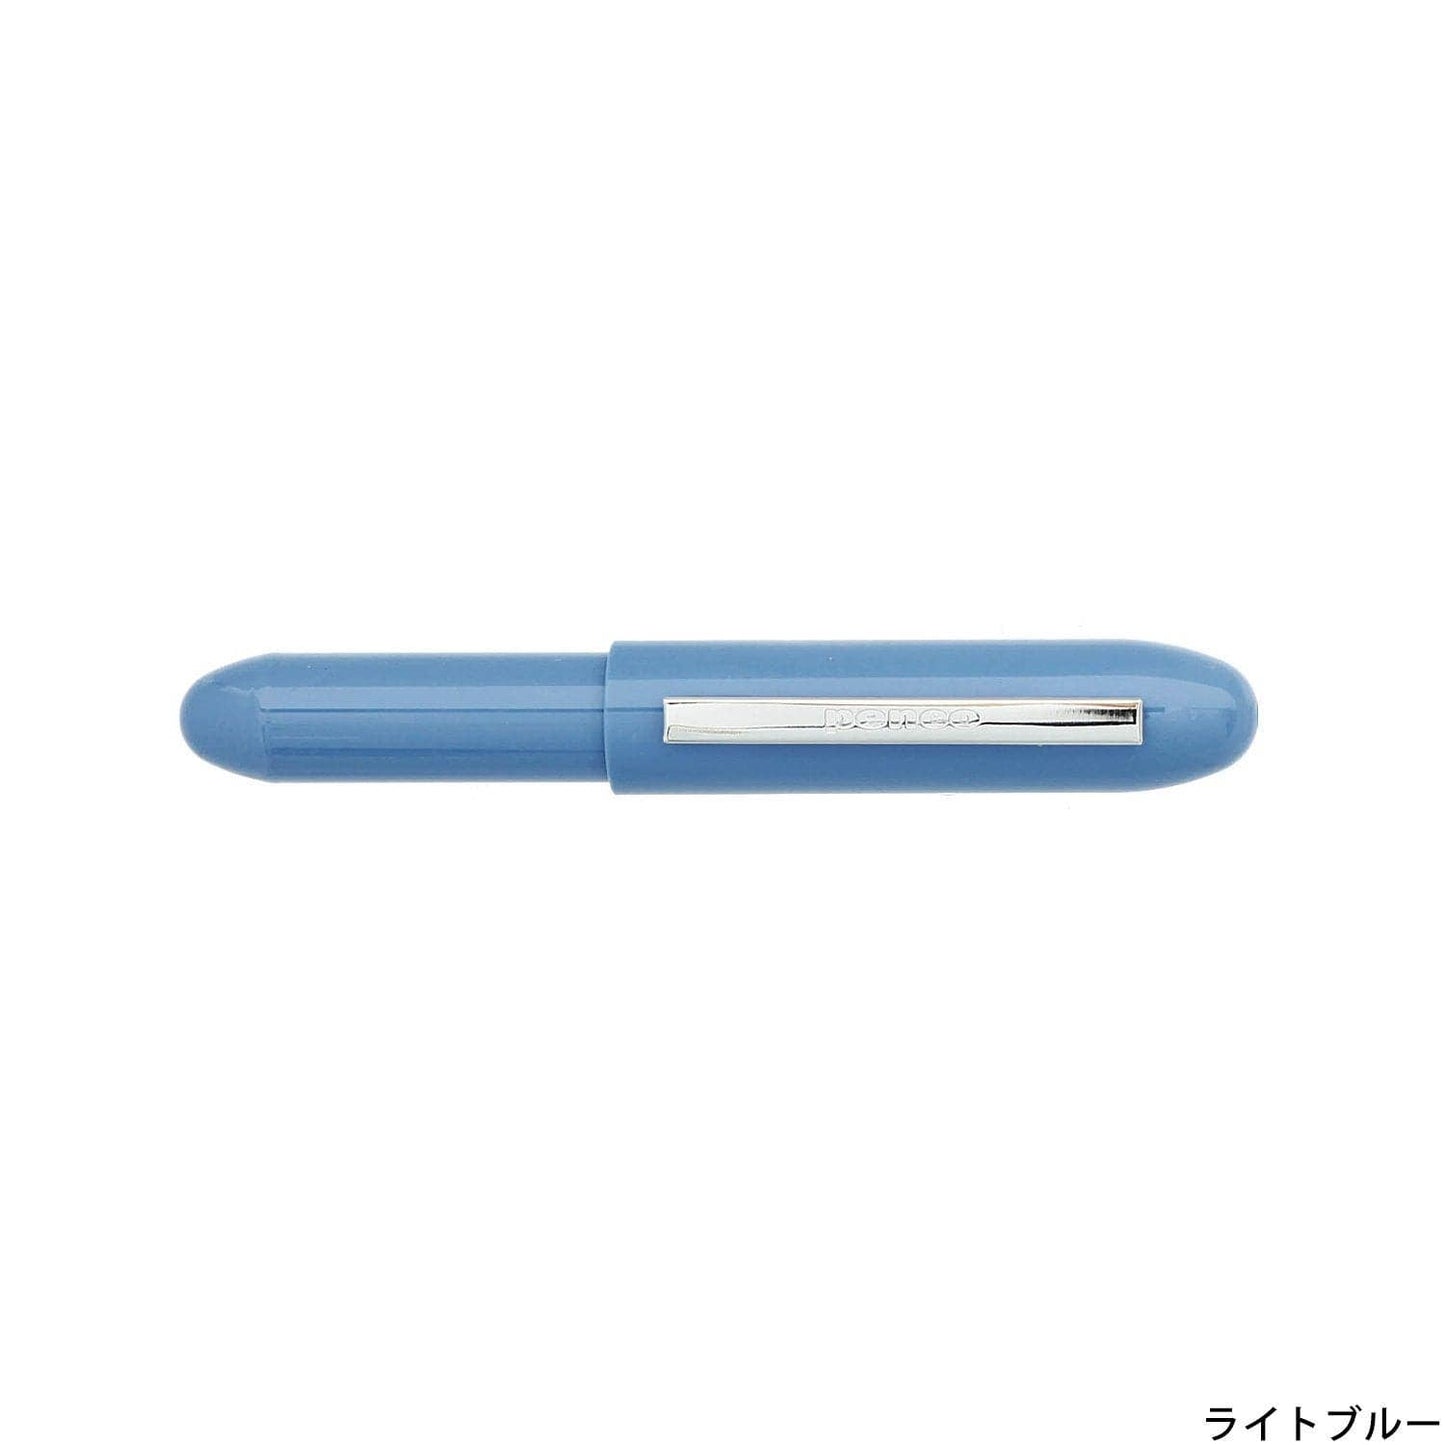 Hightide Penco Bullet Pen Light 0.38